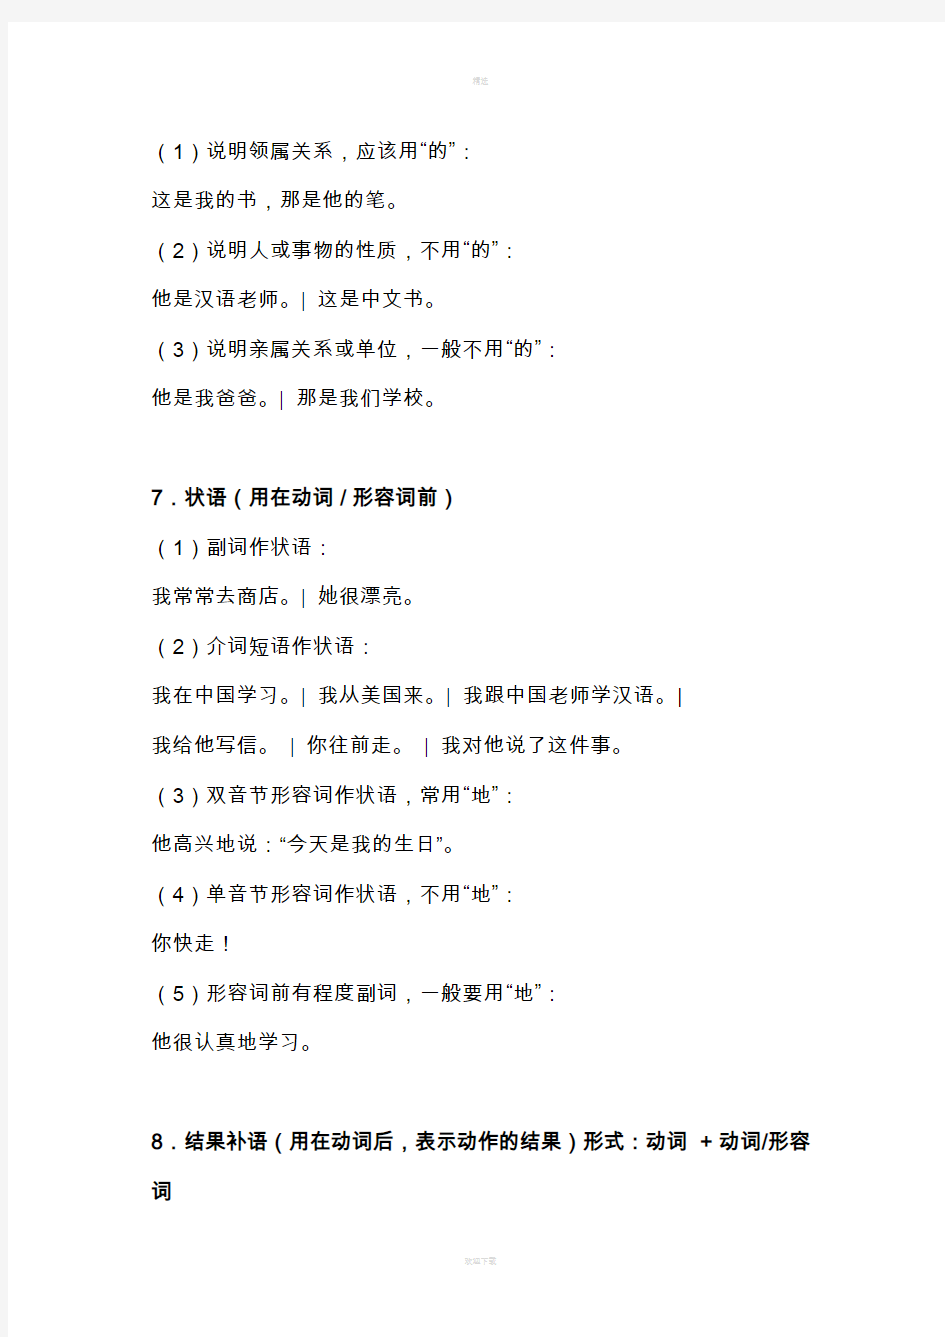 对外汉语教学最基本的个语法点新版